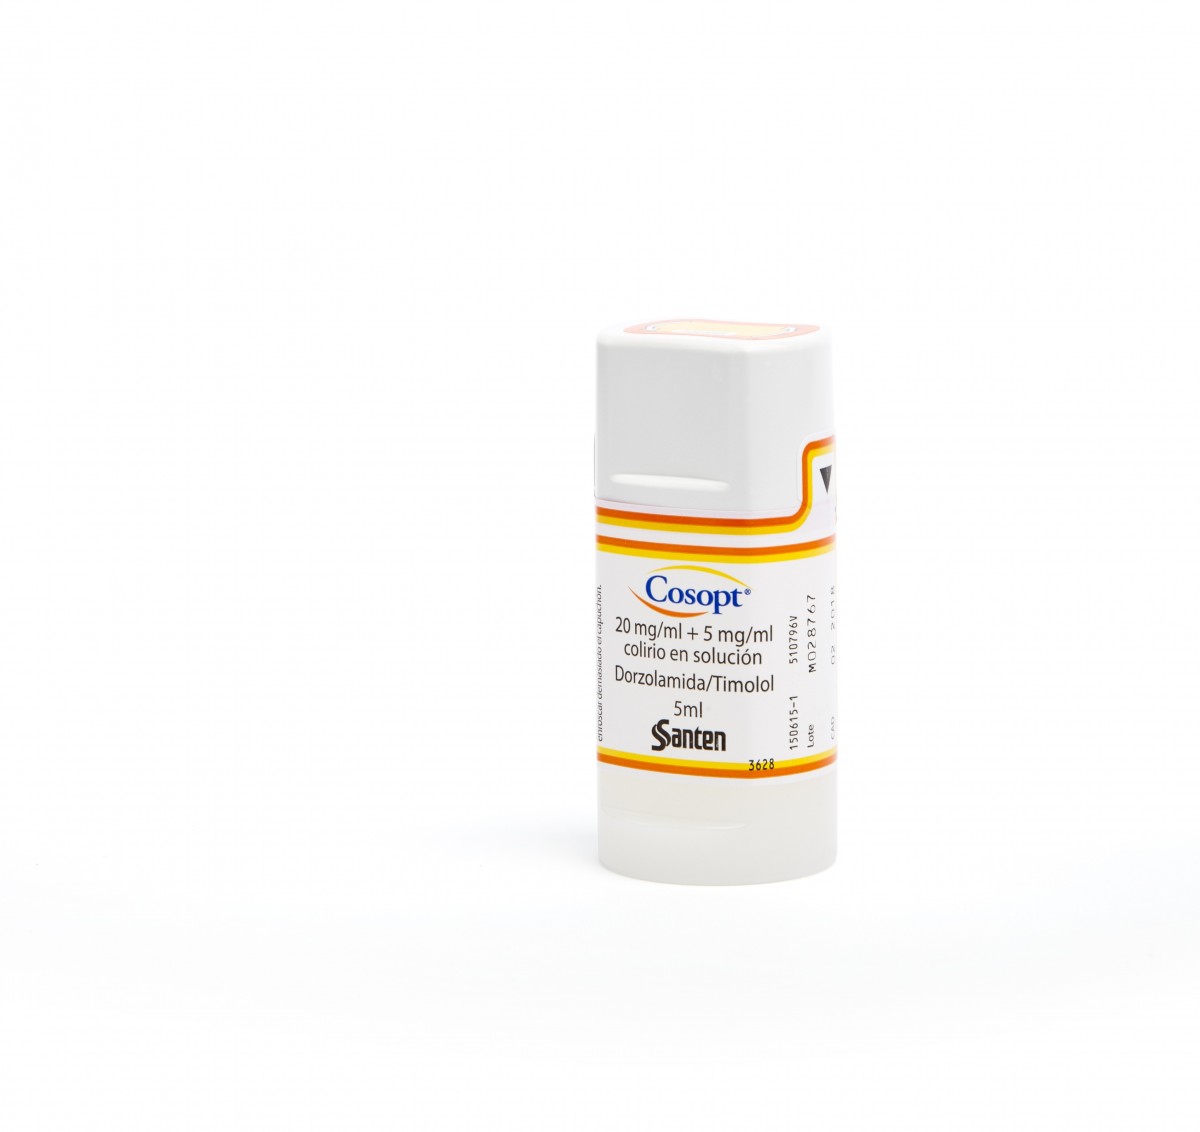 COSOPT 20 mg/ml + 5 mg/ml COLIRIO EN SOLUCION, 1 frasco de 5 ml fotografía de la forma farmacéutica.